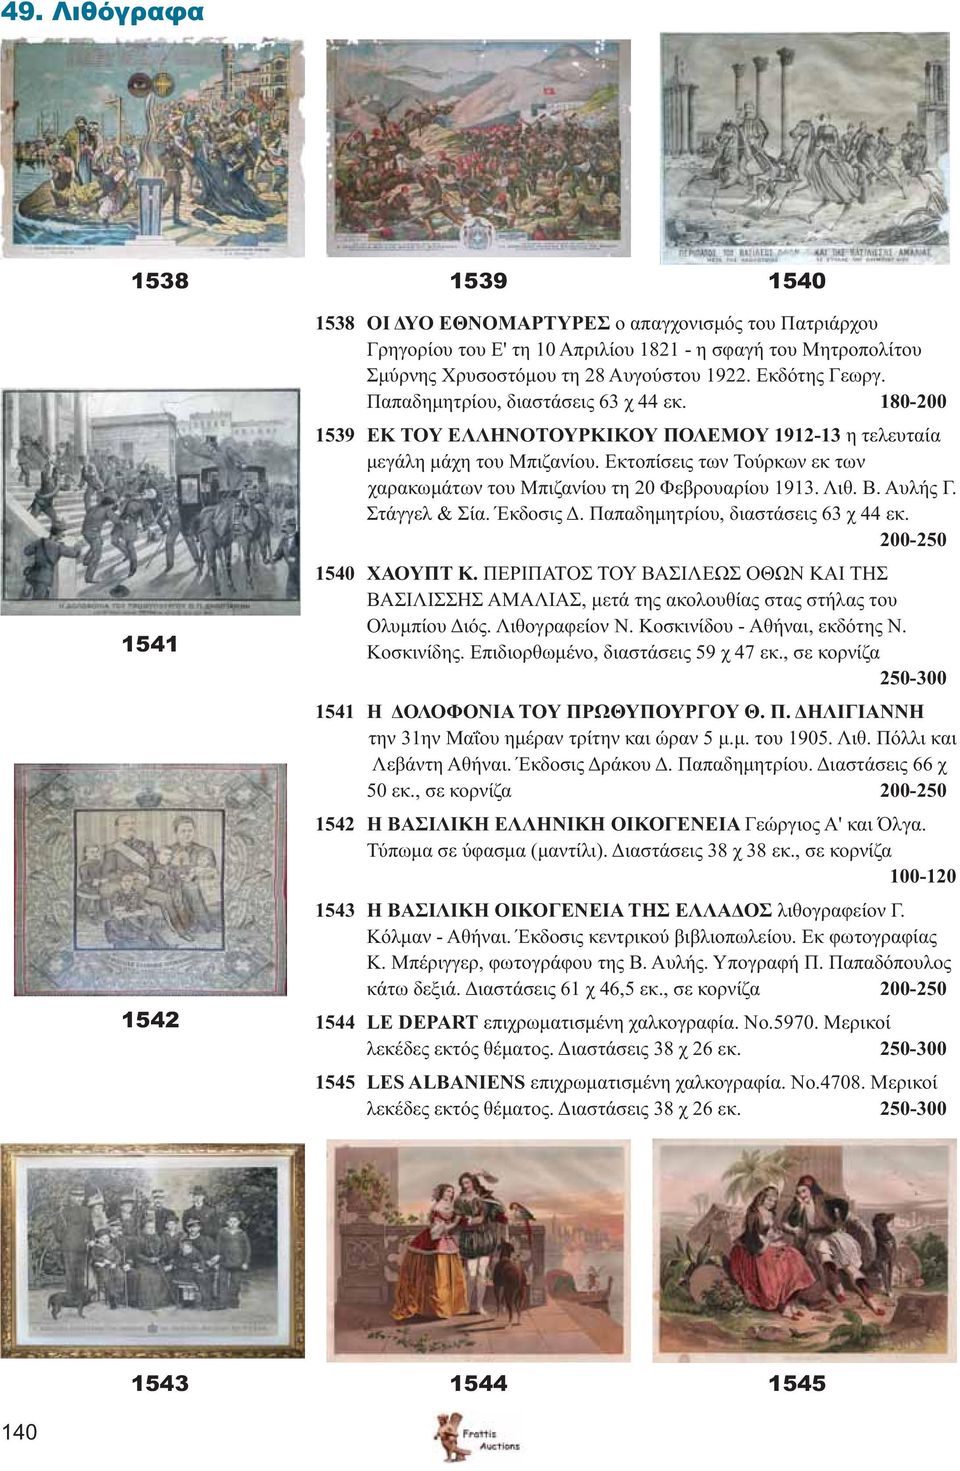 Εκτοπίσεις των Τούρκων εκ των χαρακωμάτων του Μπιζανίου τη 20 Φεβρουαρίου 1913. Λιθ. Β. Αυλής Γ. Στάγγελ & Σία. Έκδοσις Δ. Παπαδημητρίου, διαστάσεις 63 χ 44 εκ. 200-250 1540 ΧΑΟΥΠΤ Κ.